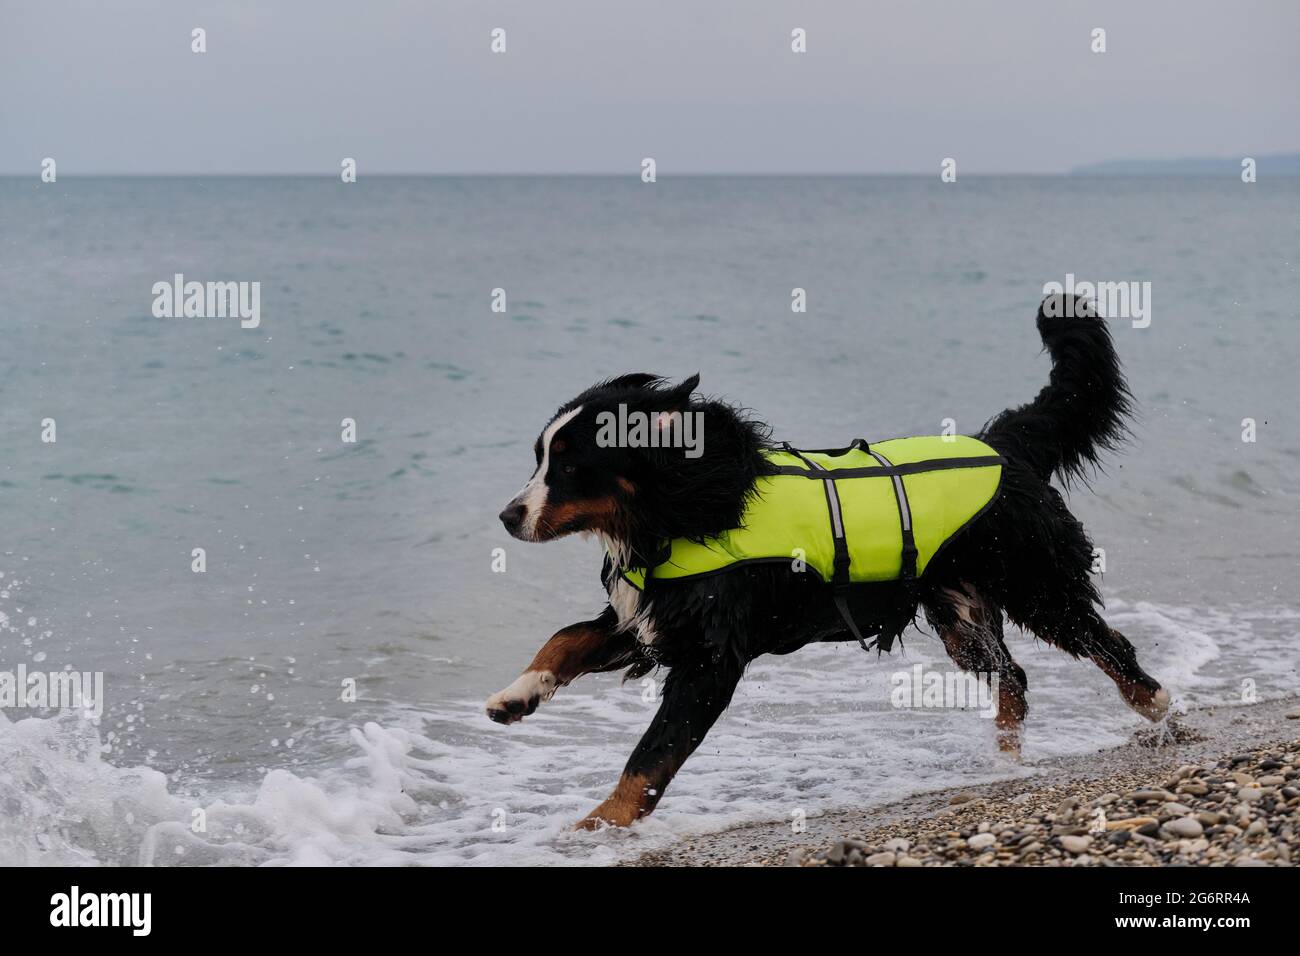 Rettungshund läuft schnell am Strand entlang, um den Opfern erste Hilfe zu leisten. Berner Berghund in leuchtend grüner Schwimmweste auf See. Stockfoto